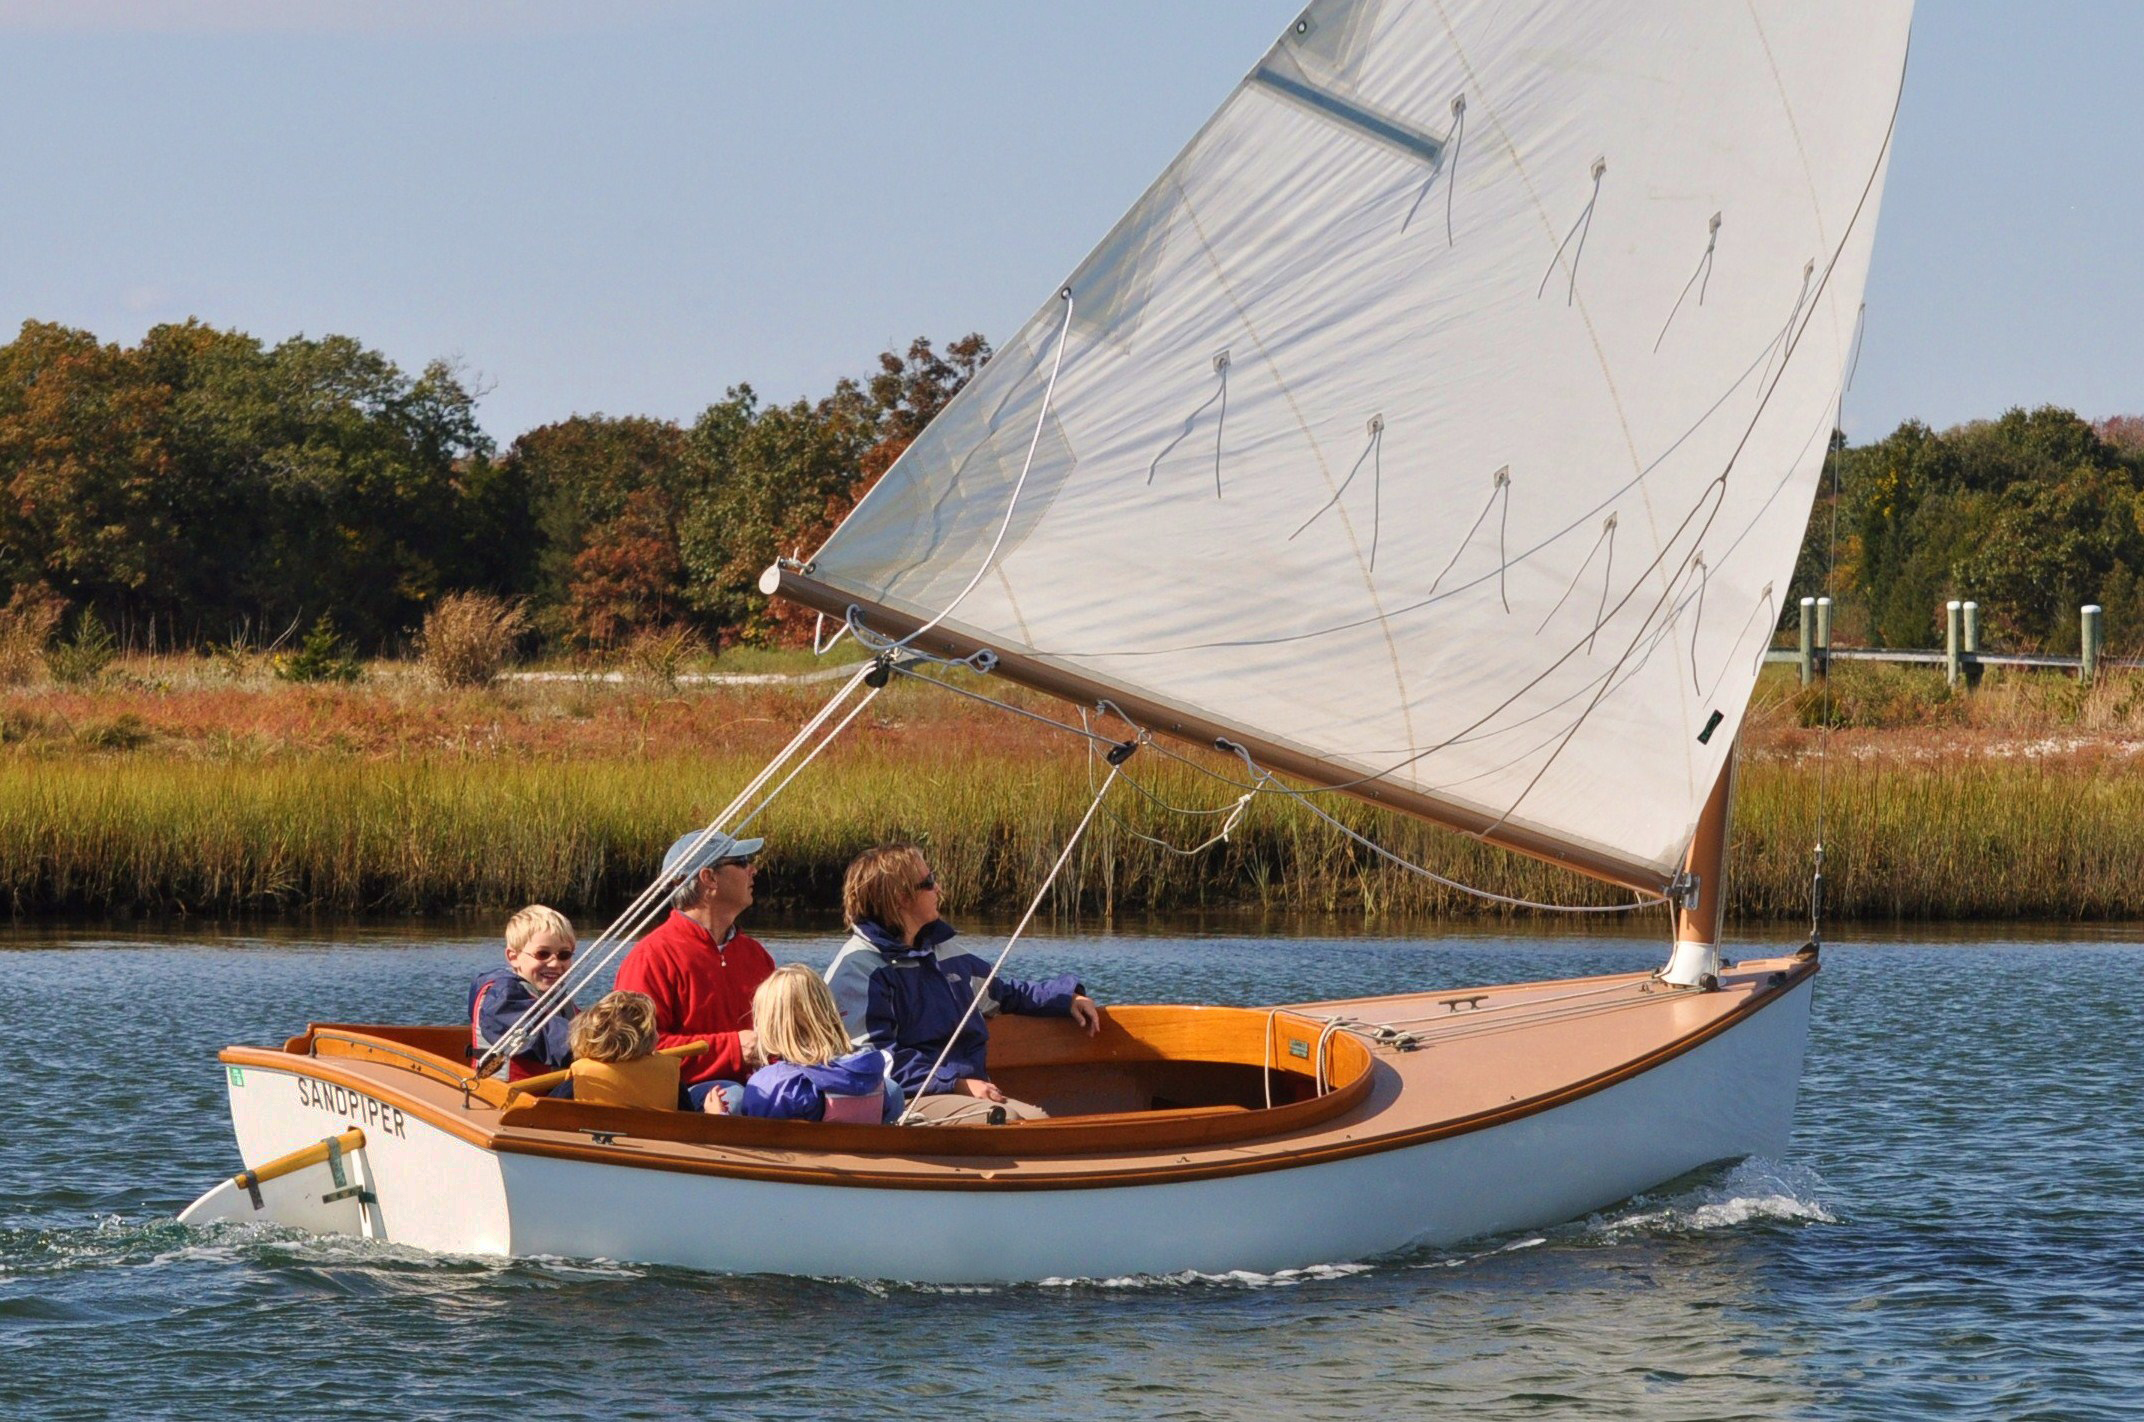 sandpiper sailboat for sale ontario